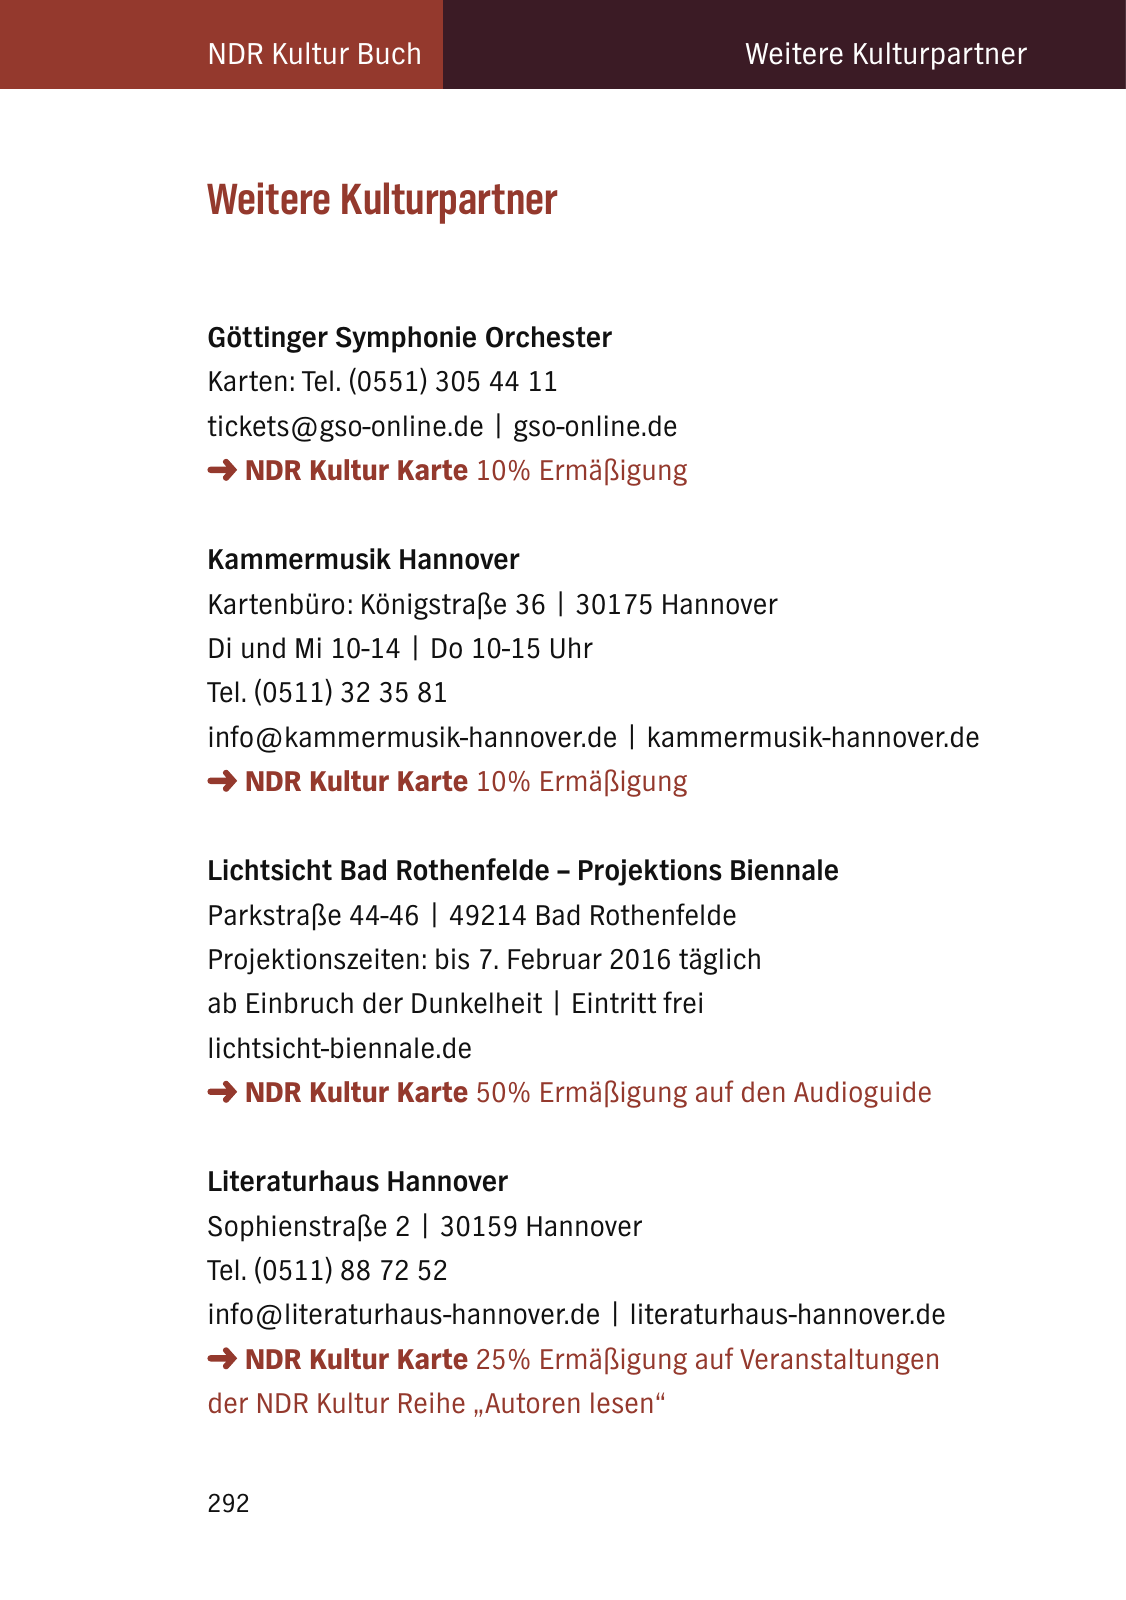 Vorschau NDR Kultur Buch 2016_aktualisiert Seite 294